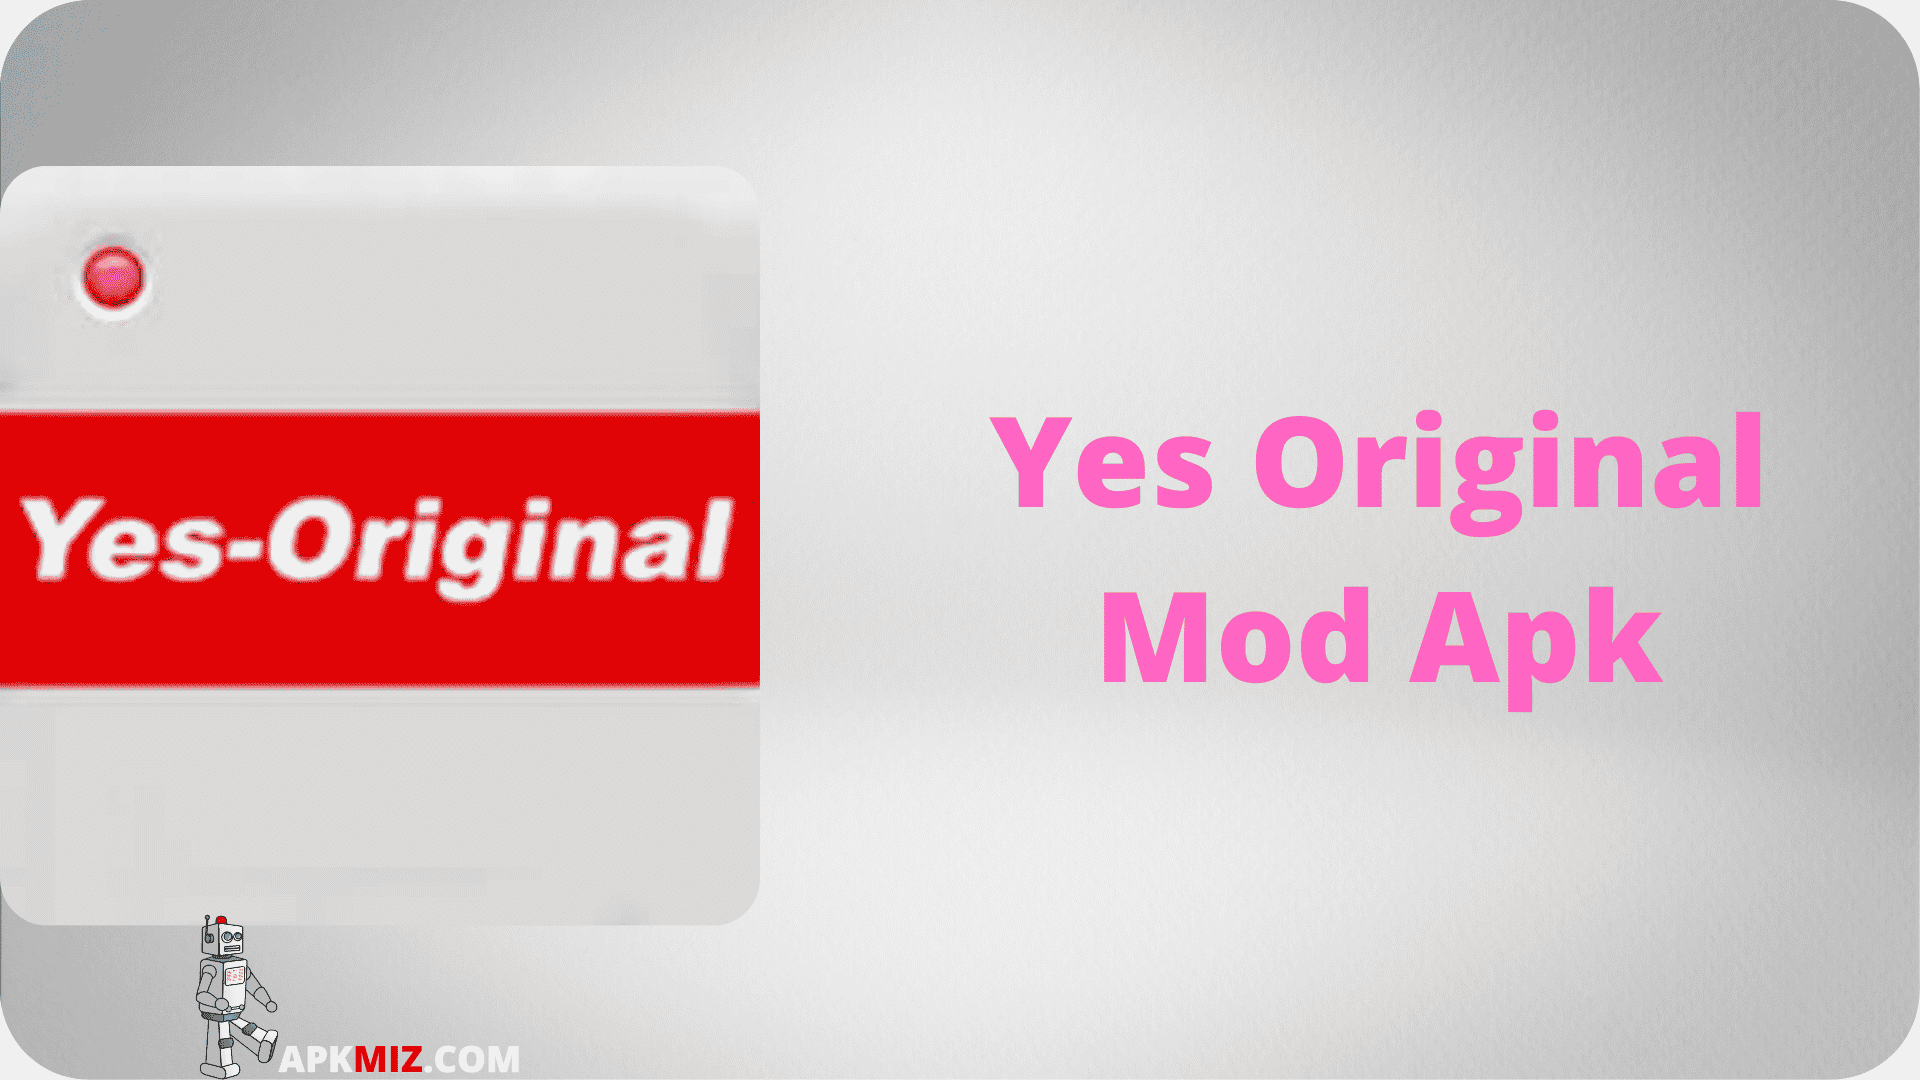 Yes Original Mod Apk